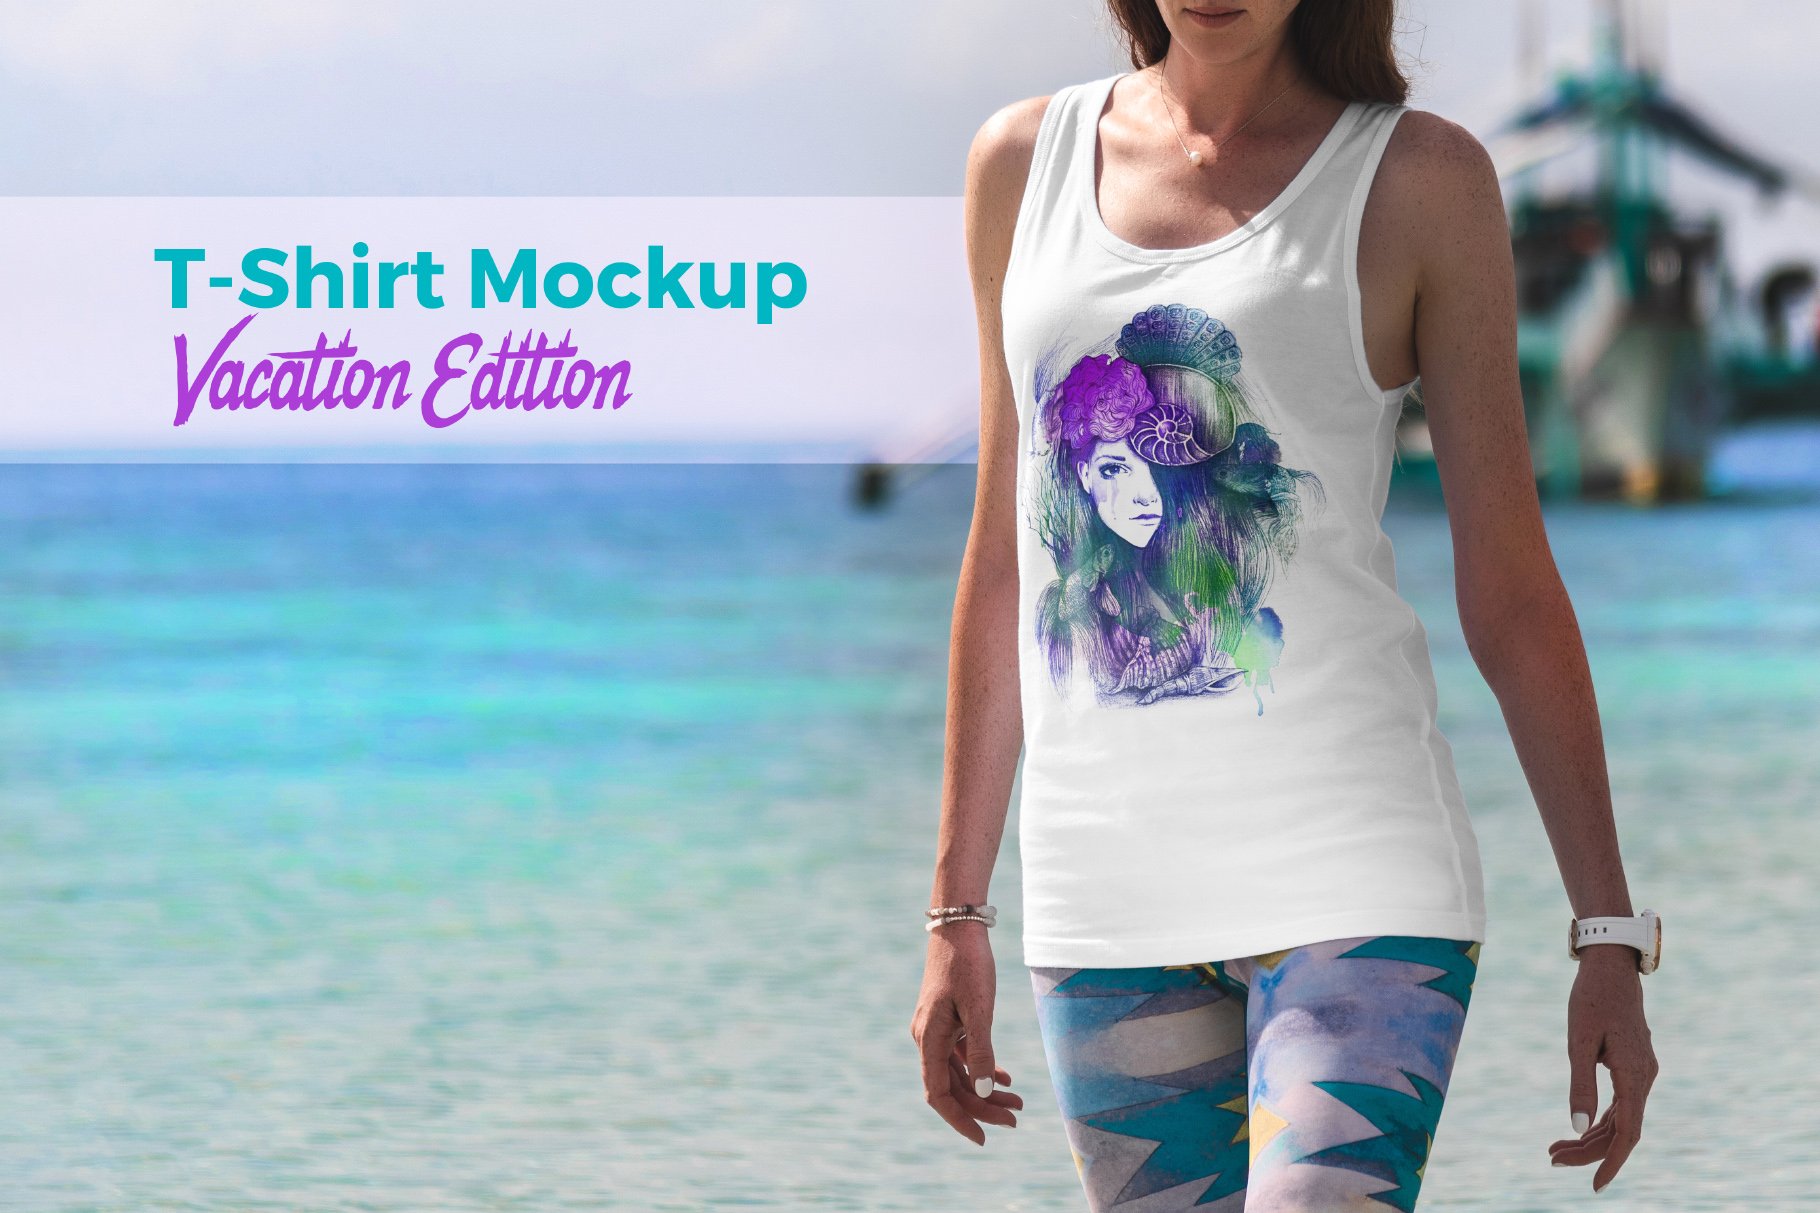 T-Shirt Mockup Vacation Edition cover image.